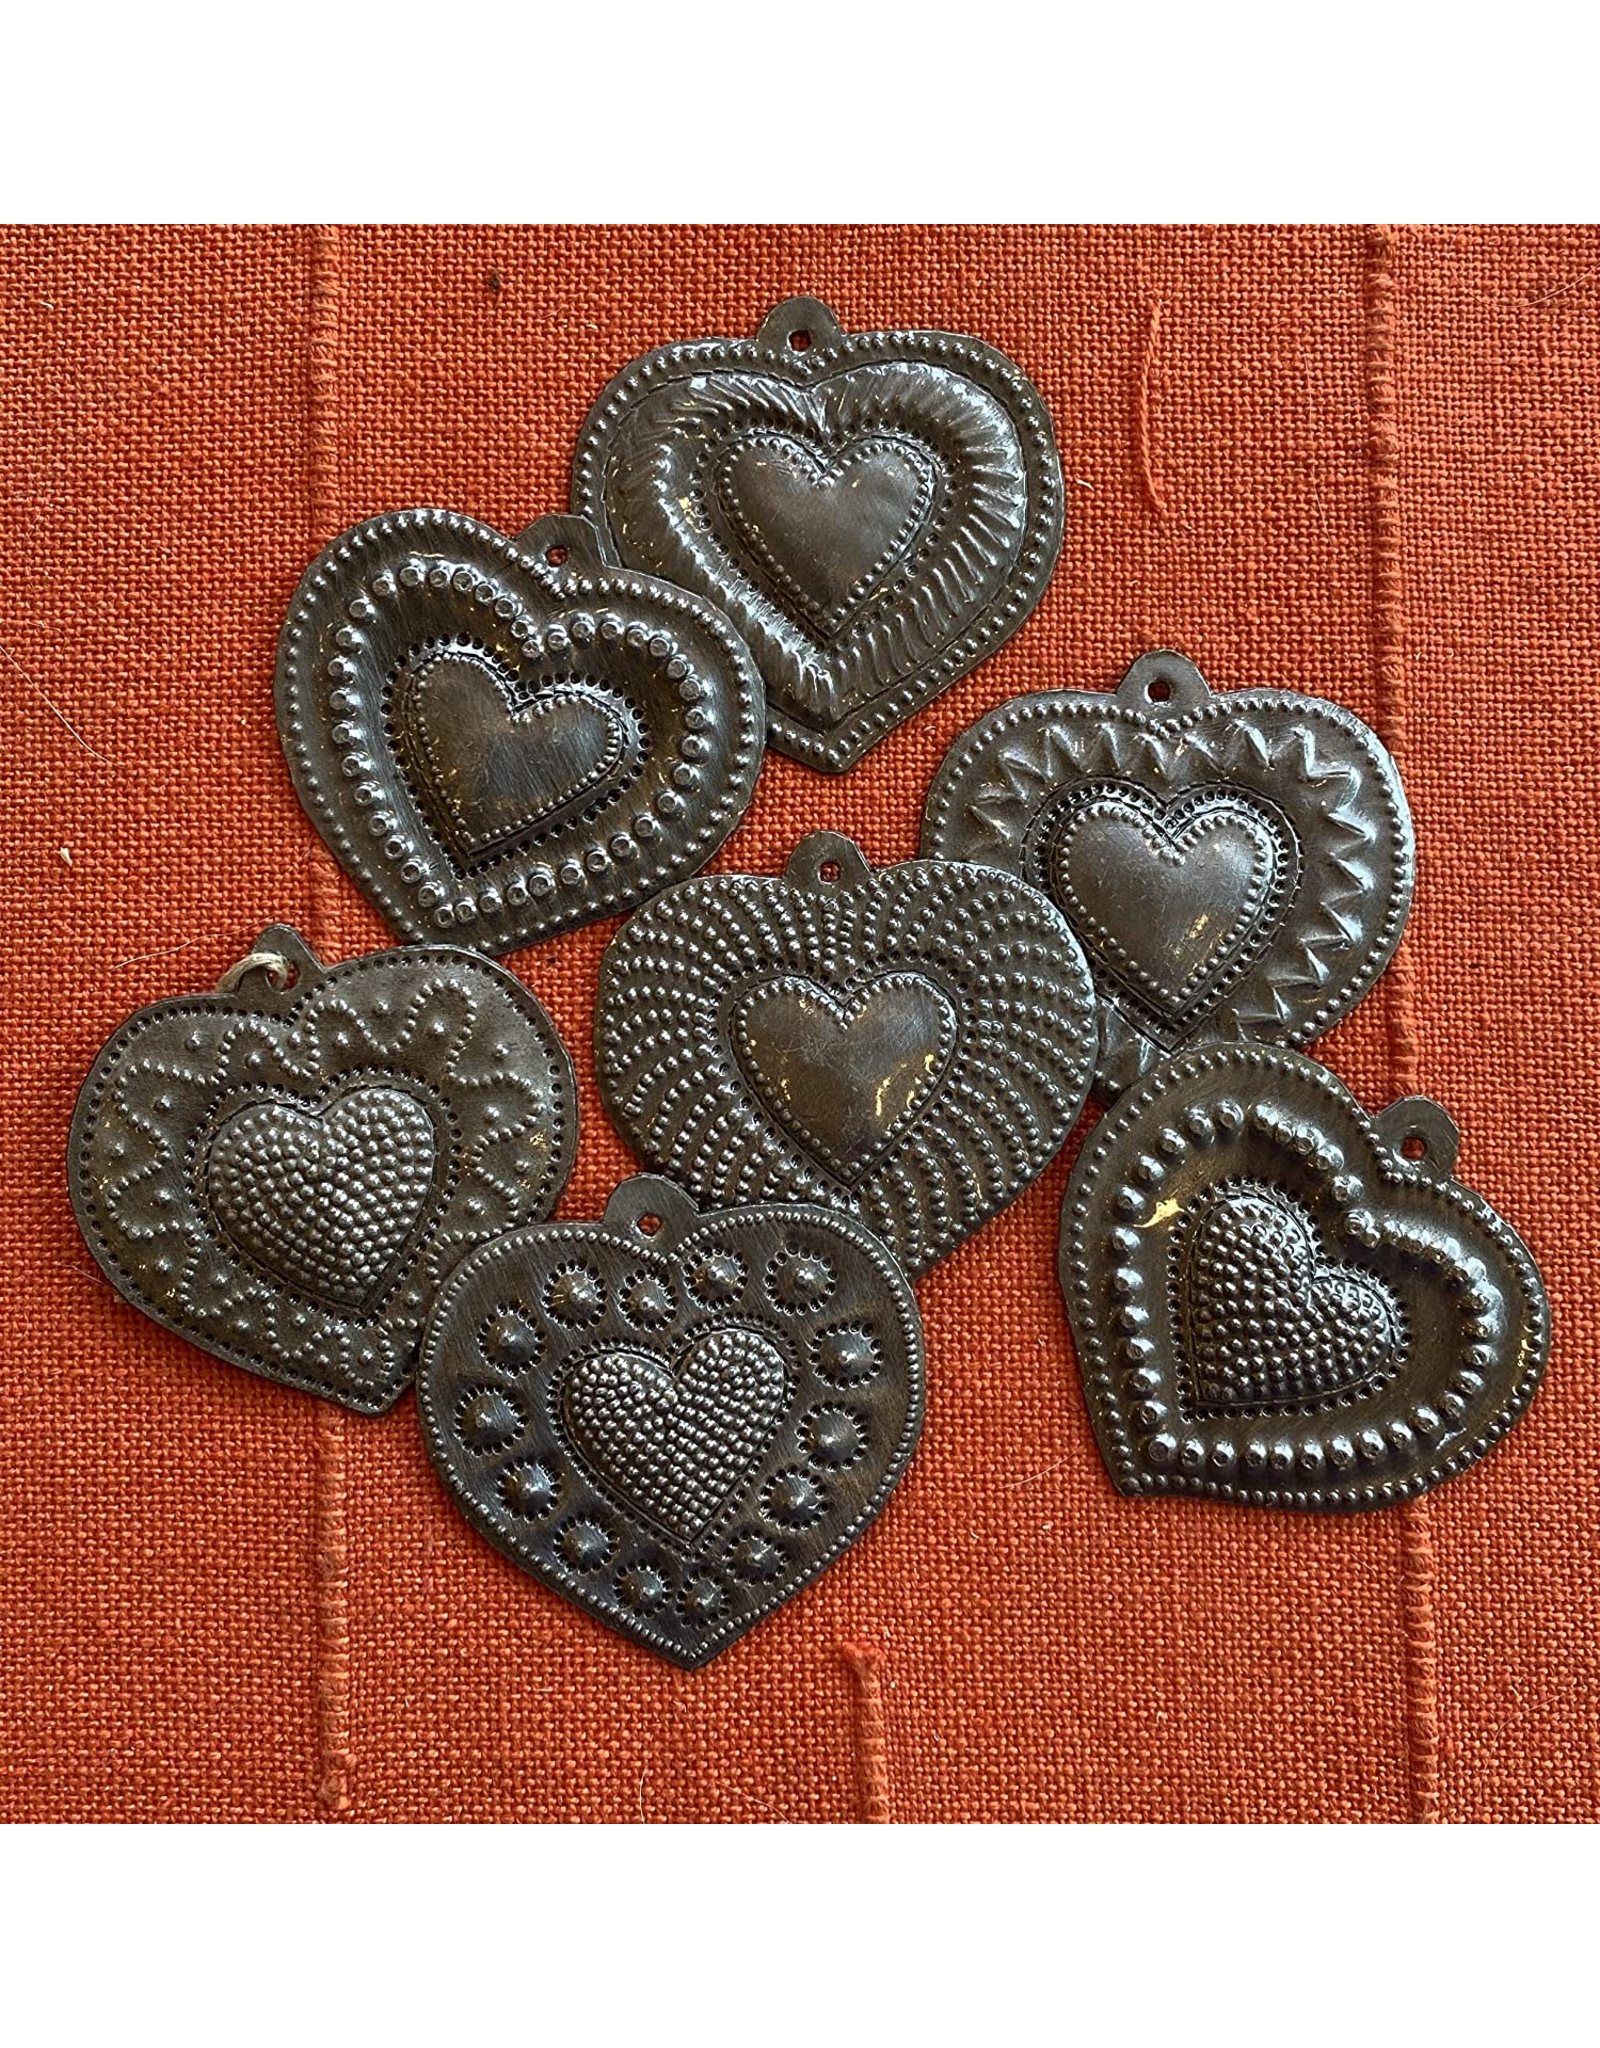 Haiti Milagros Heart Ornament, Haiti